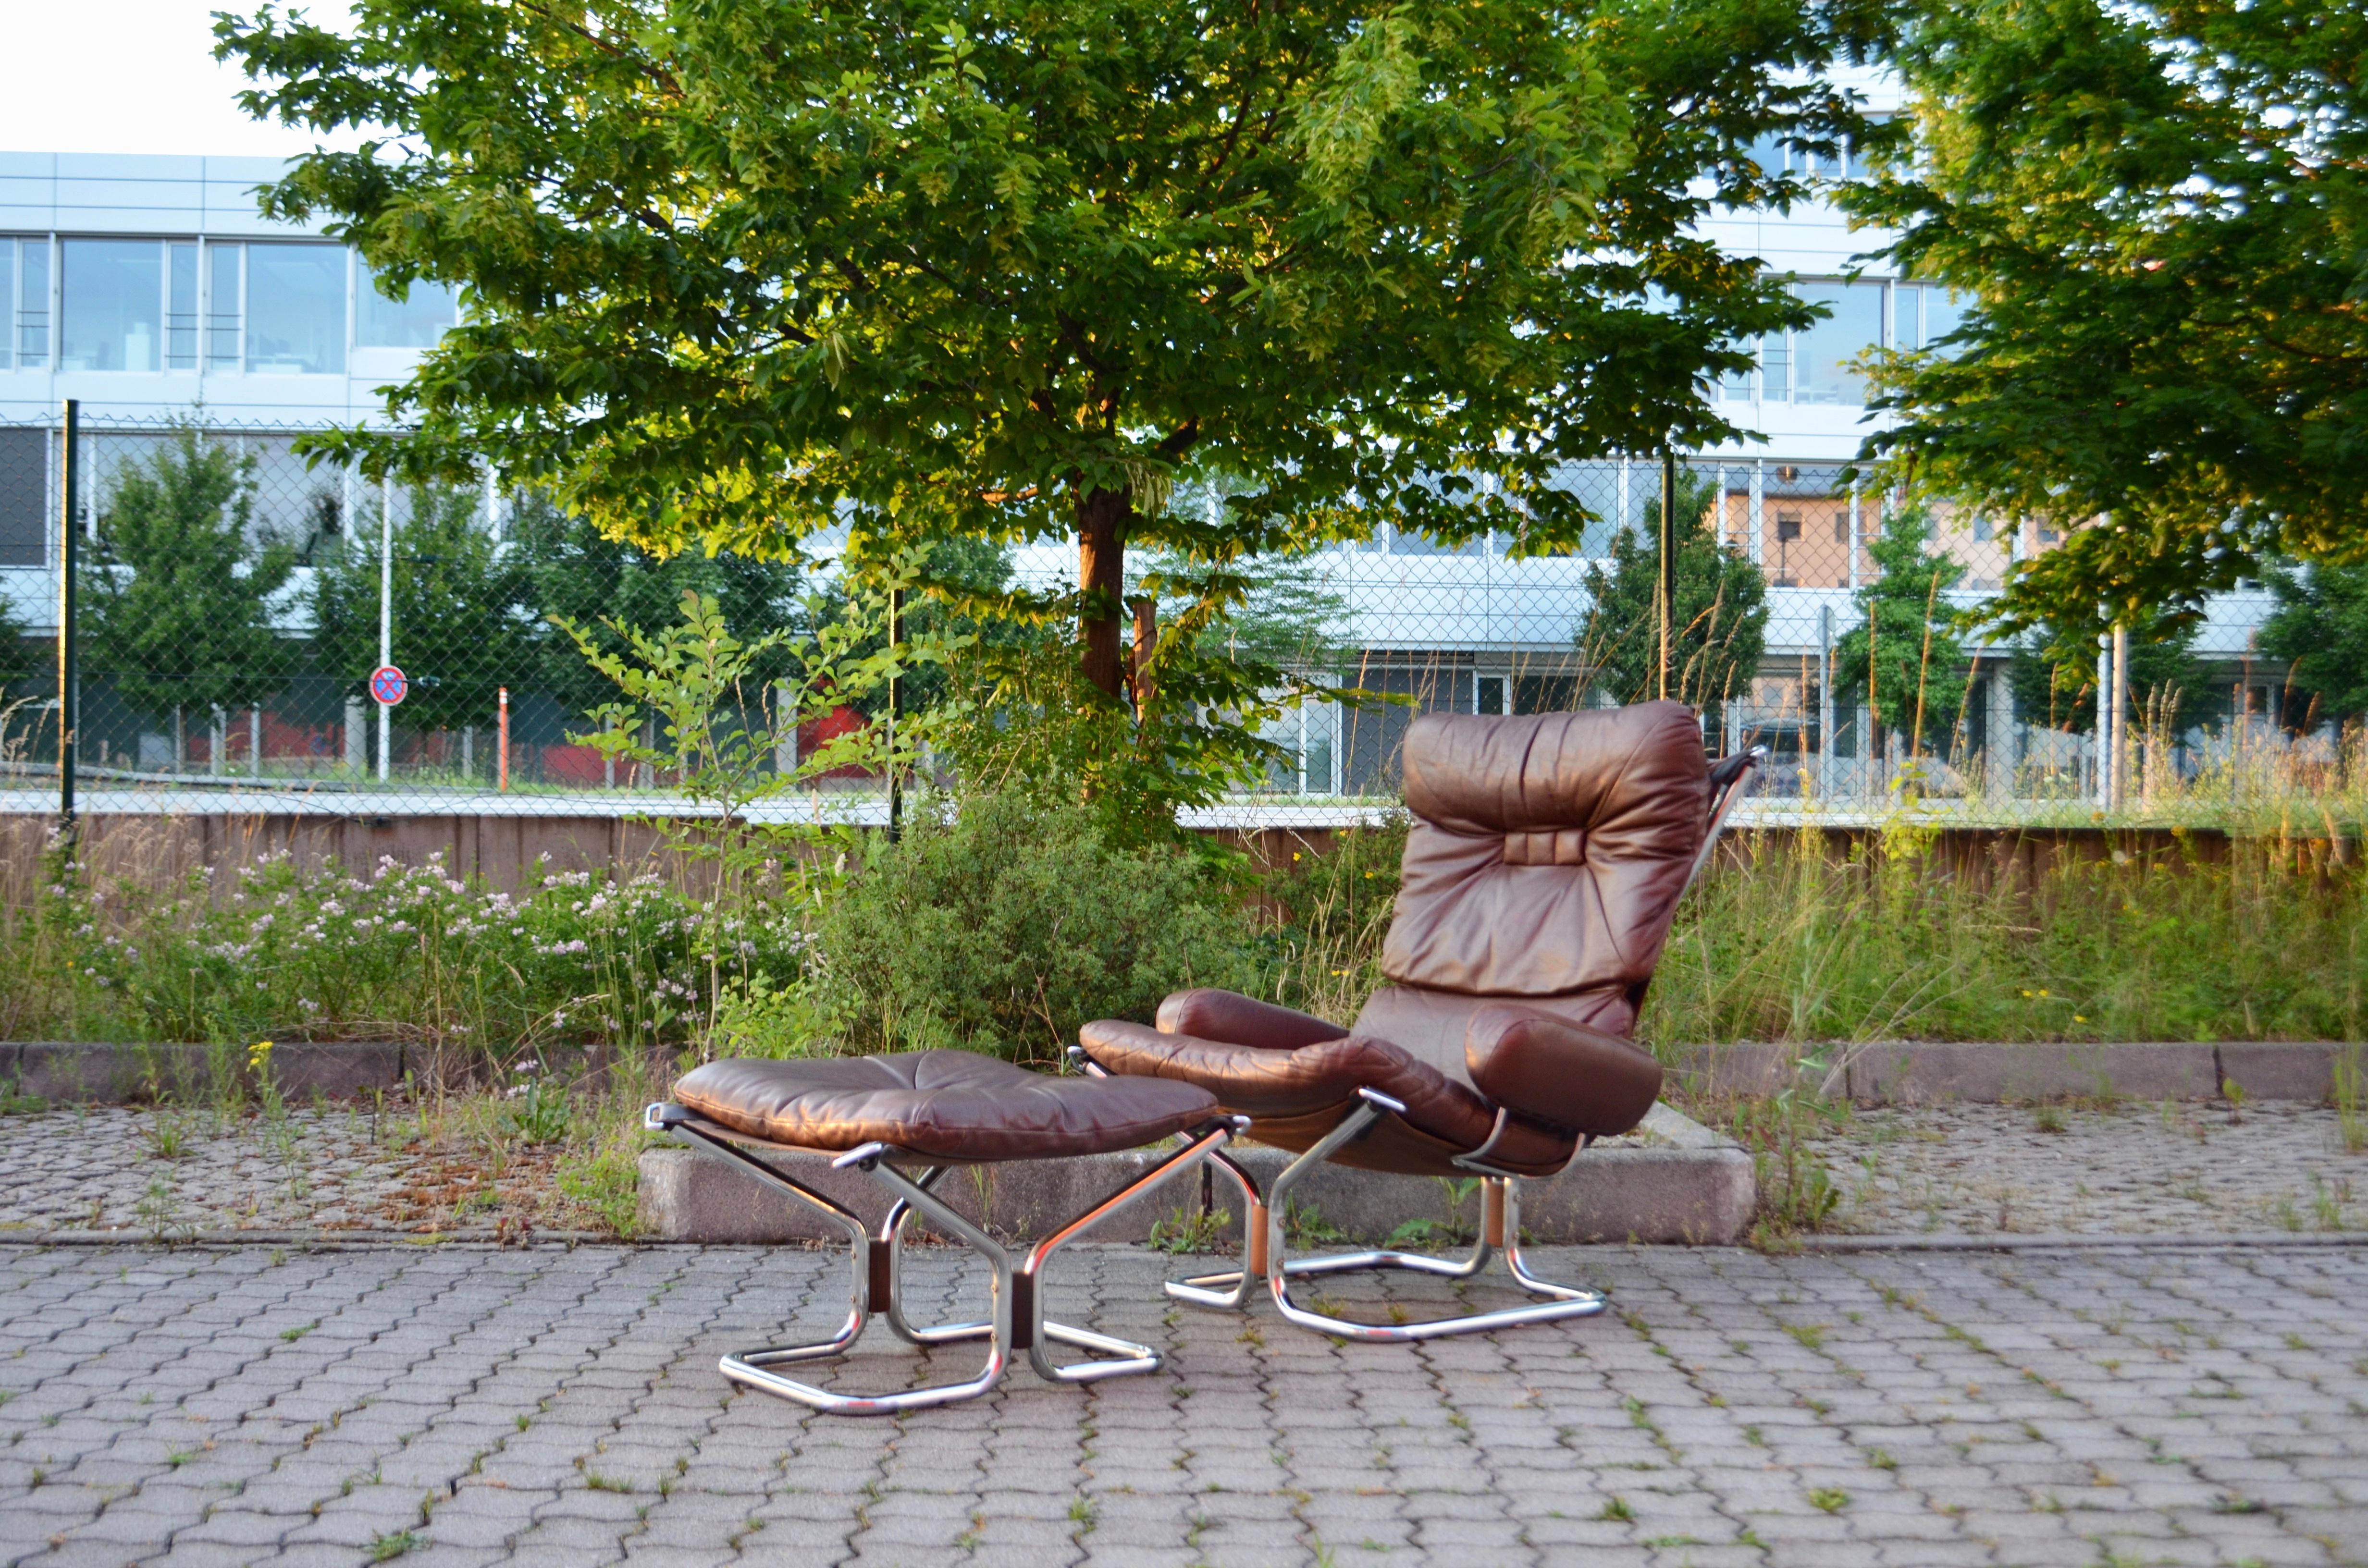 Cette chaise longue Wingback et son ottomane ont été conçus par Harald Relling et produits par Westnofa en Norvège.
Ils sont réalisés en cuir aniline marron sur une structure en tube d'acier chromé et une toile.
Les coussins souples et amovibles